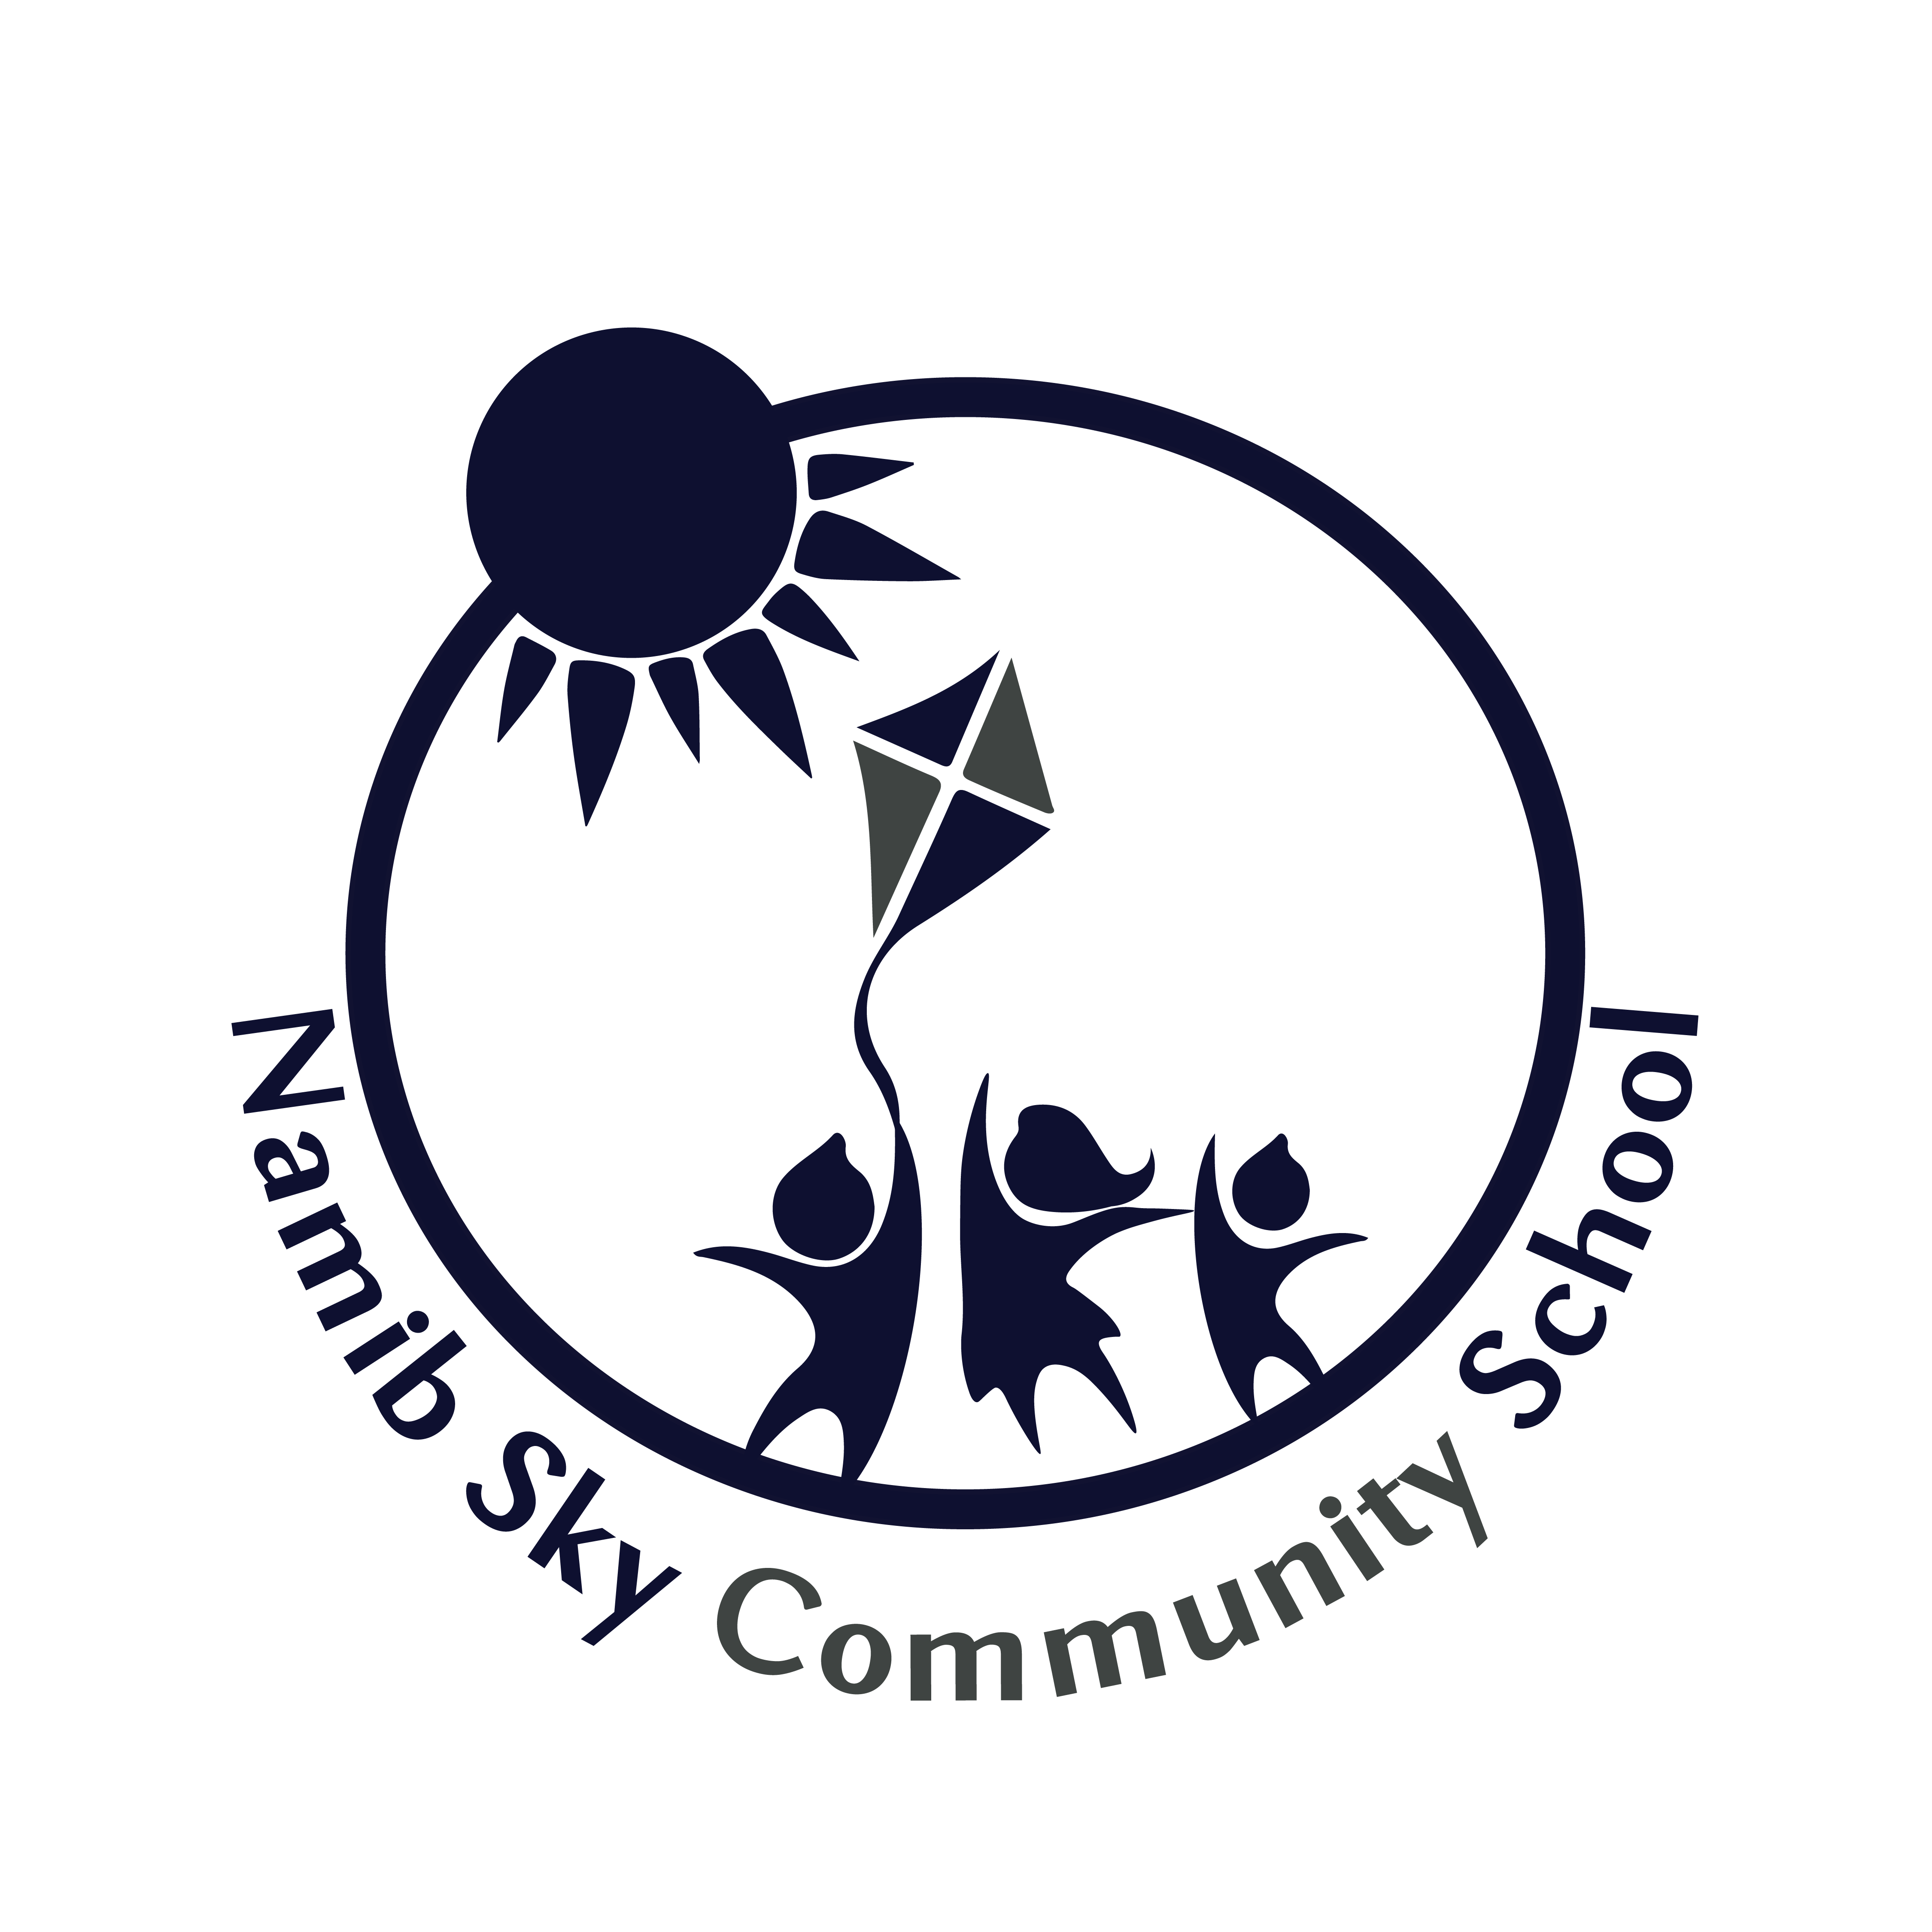 Namib Sky Community School Logo